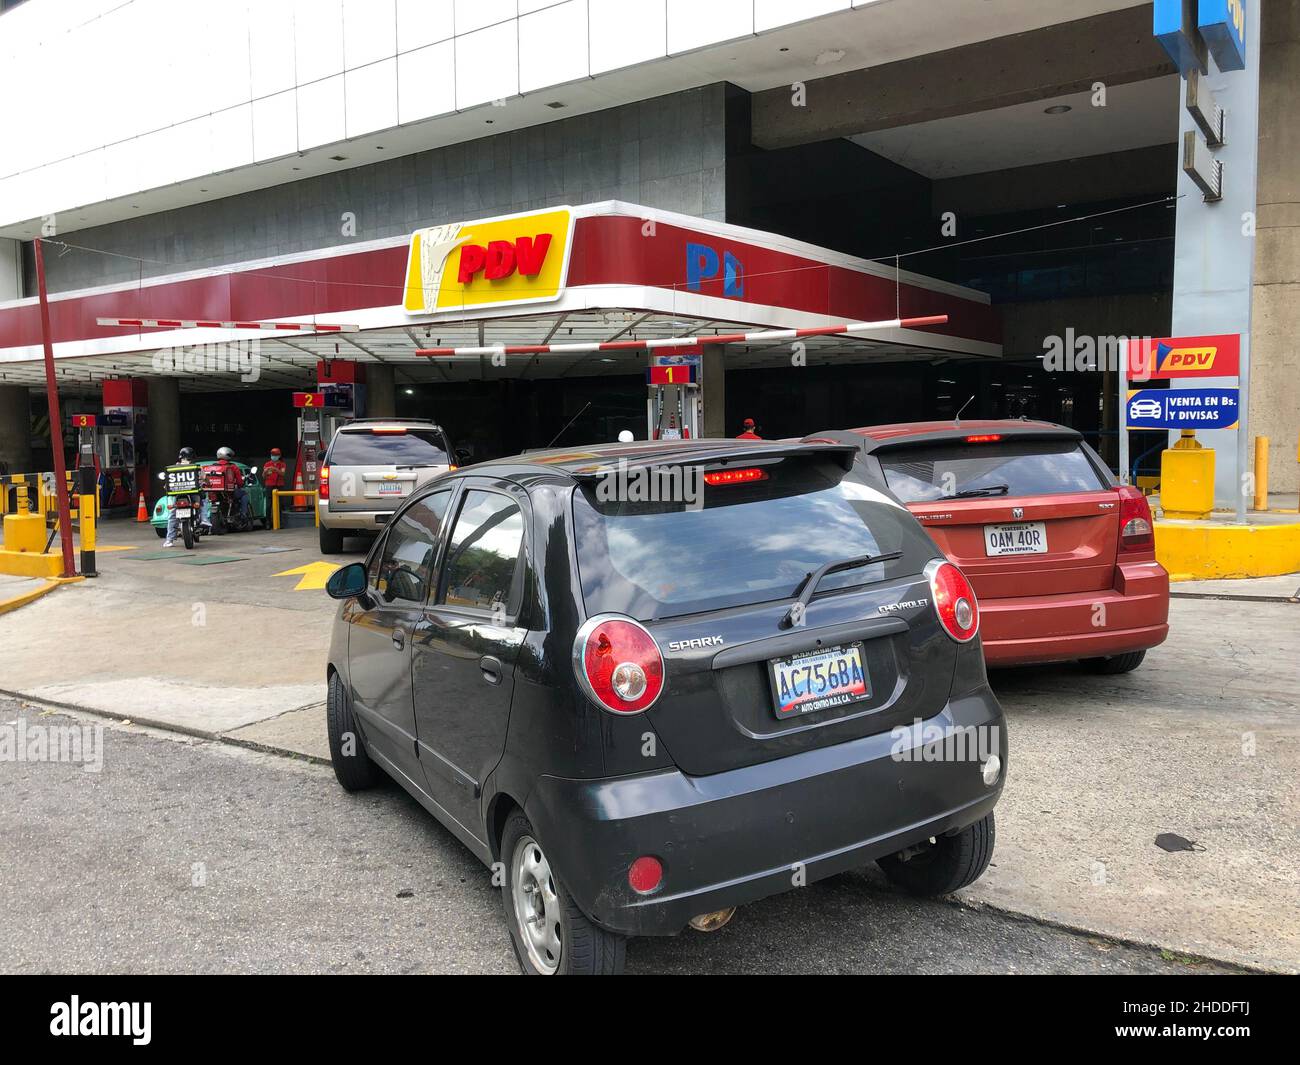 La gasolinera PDVSA, empresa estatal de petróleo y gas, se ve durante la escasez de combustible en Venezuela Foto de stock